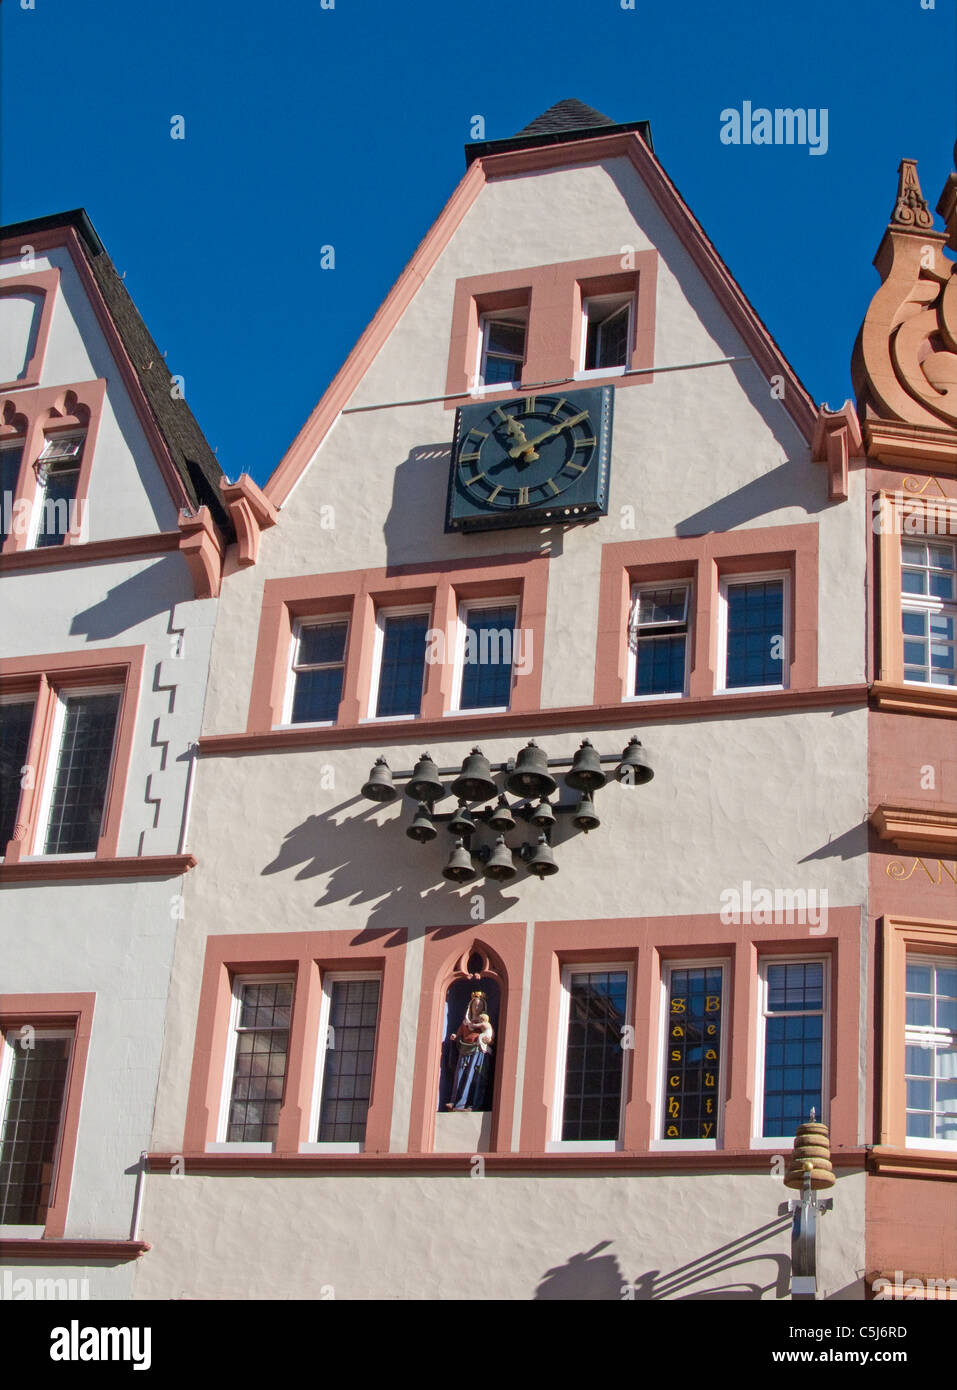 Glockenspiel un Hausfassade, von Trier, Carrilon Hauptmarkt, orquesta campanas en una casa de fachada, principal mercado Foto de stock